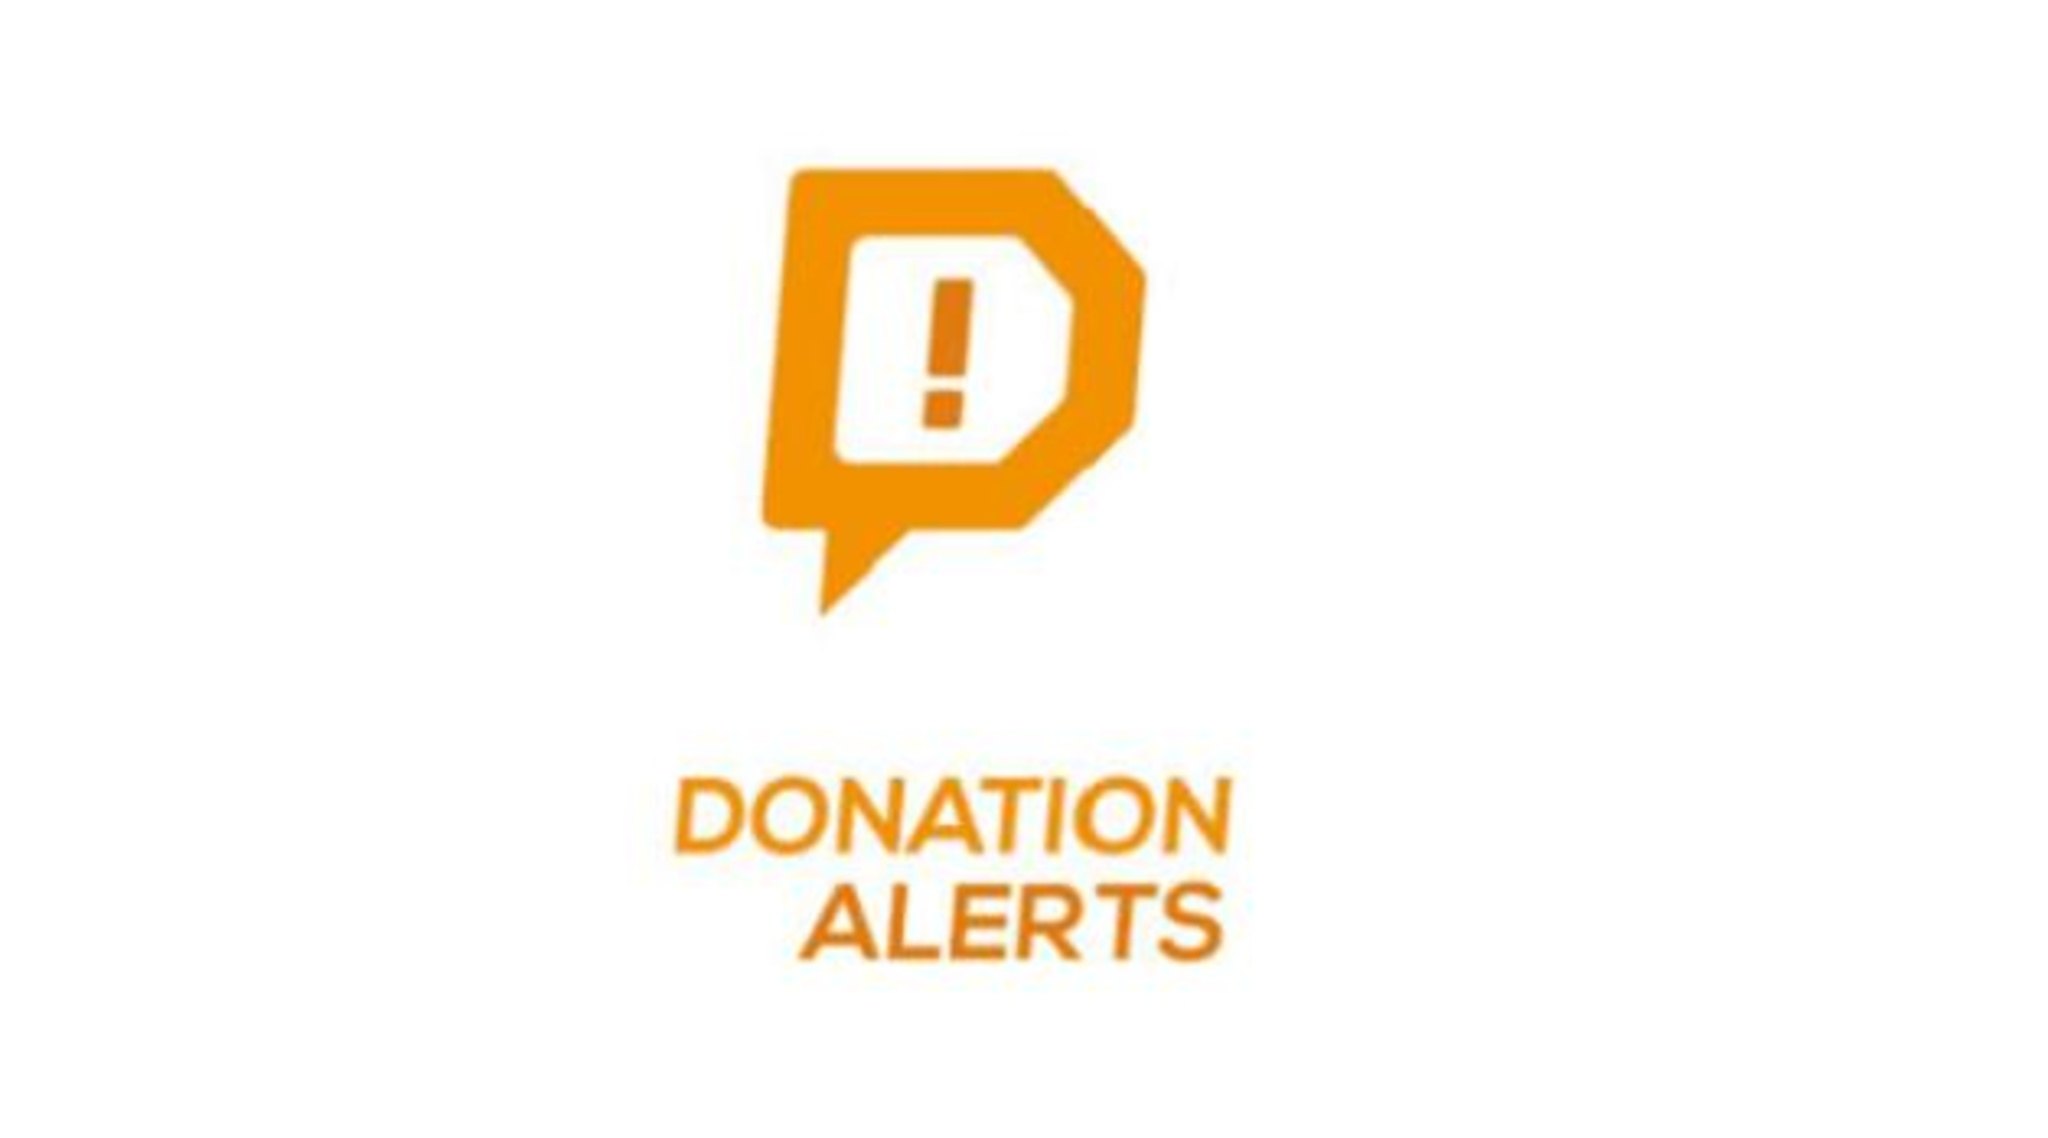 Донатион алертс донаты. Значок donationalerts. Логотип donation Alerts. Фото для donationalerts. Donationalerts ярлык.